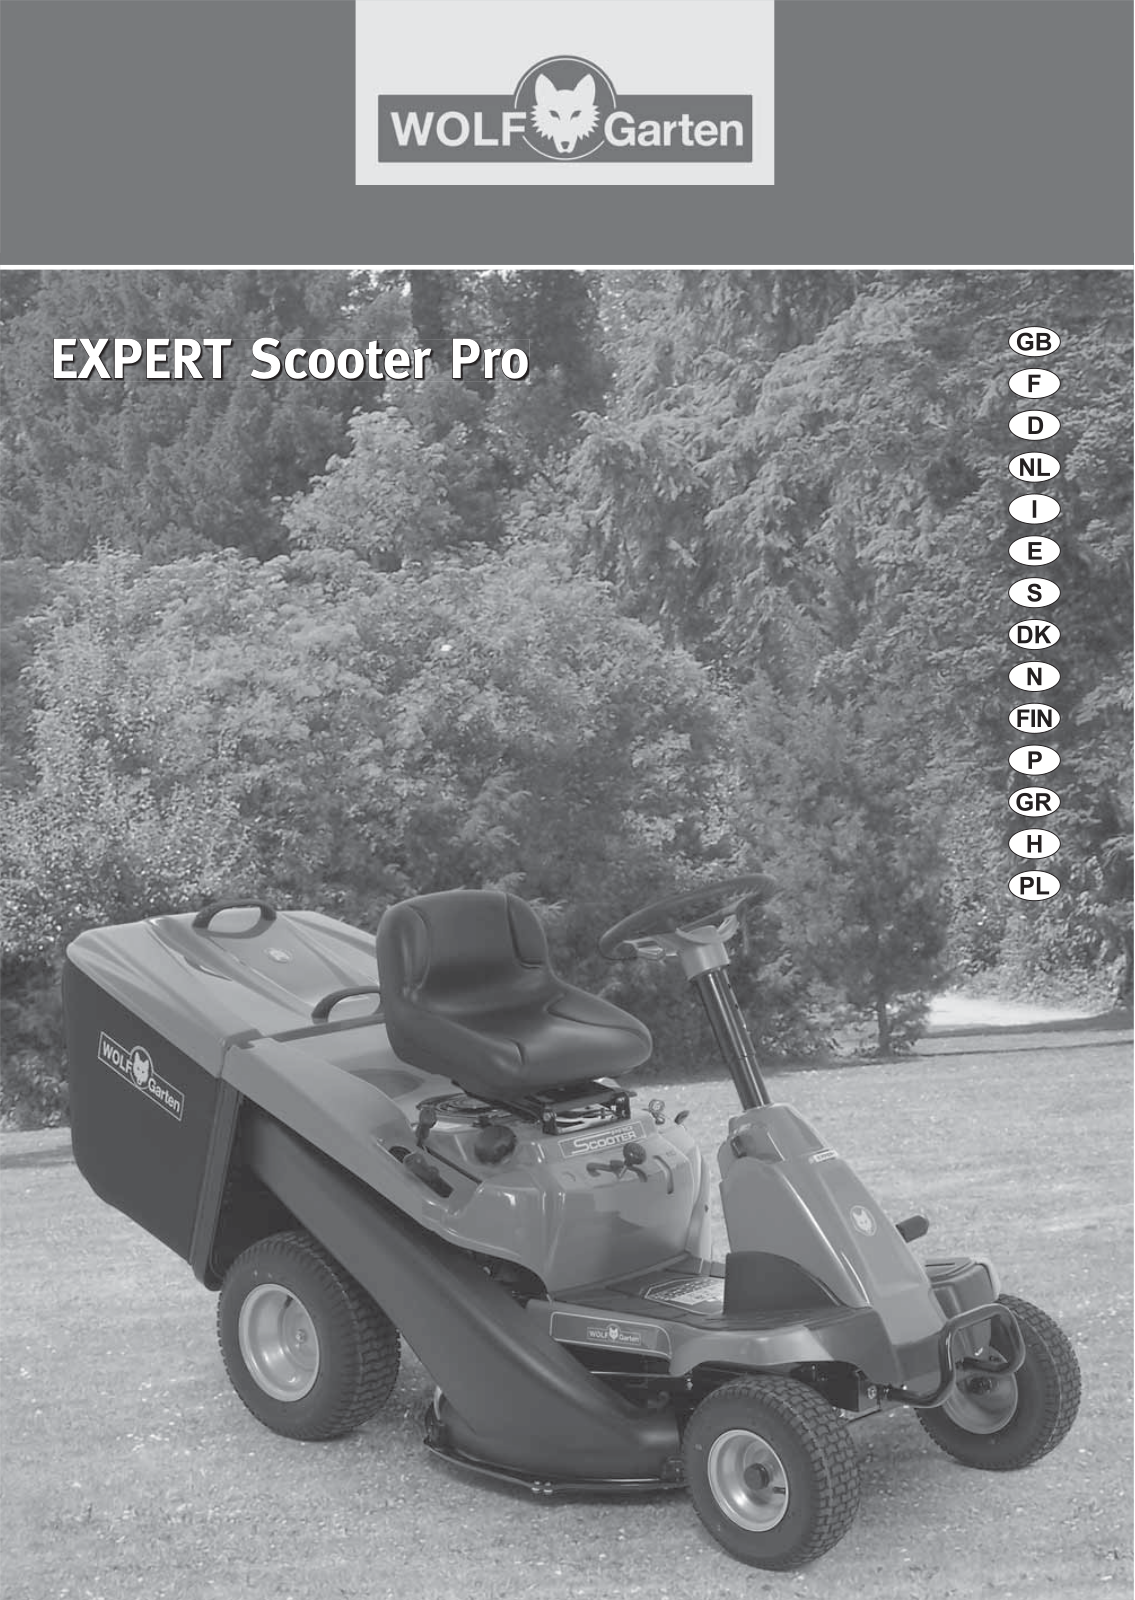 Wolf Garten EXPERT Scooter Pro User Manual